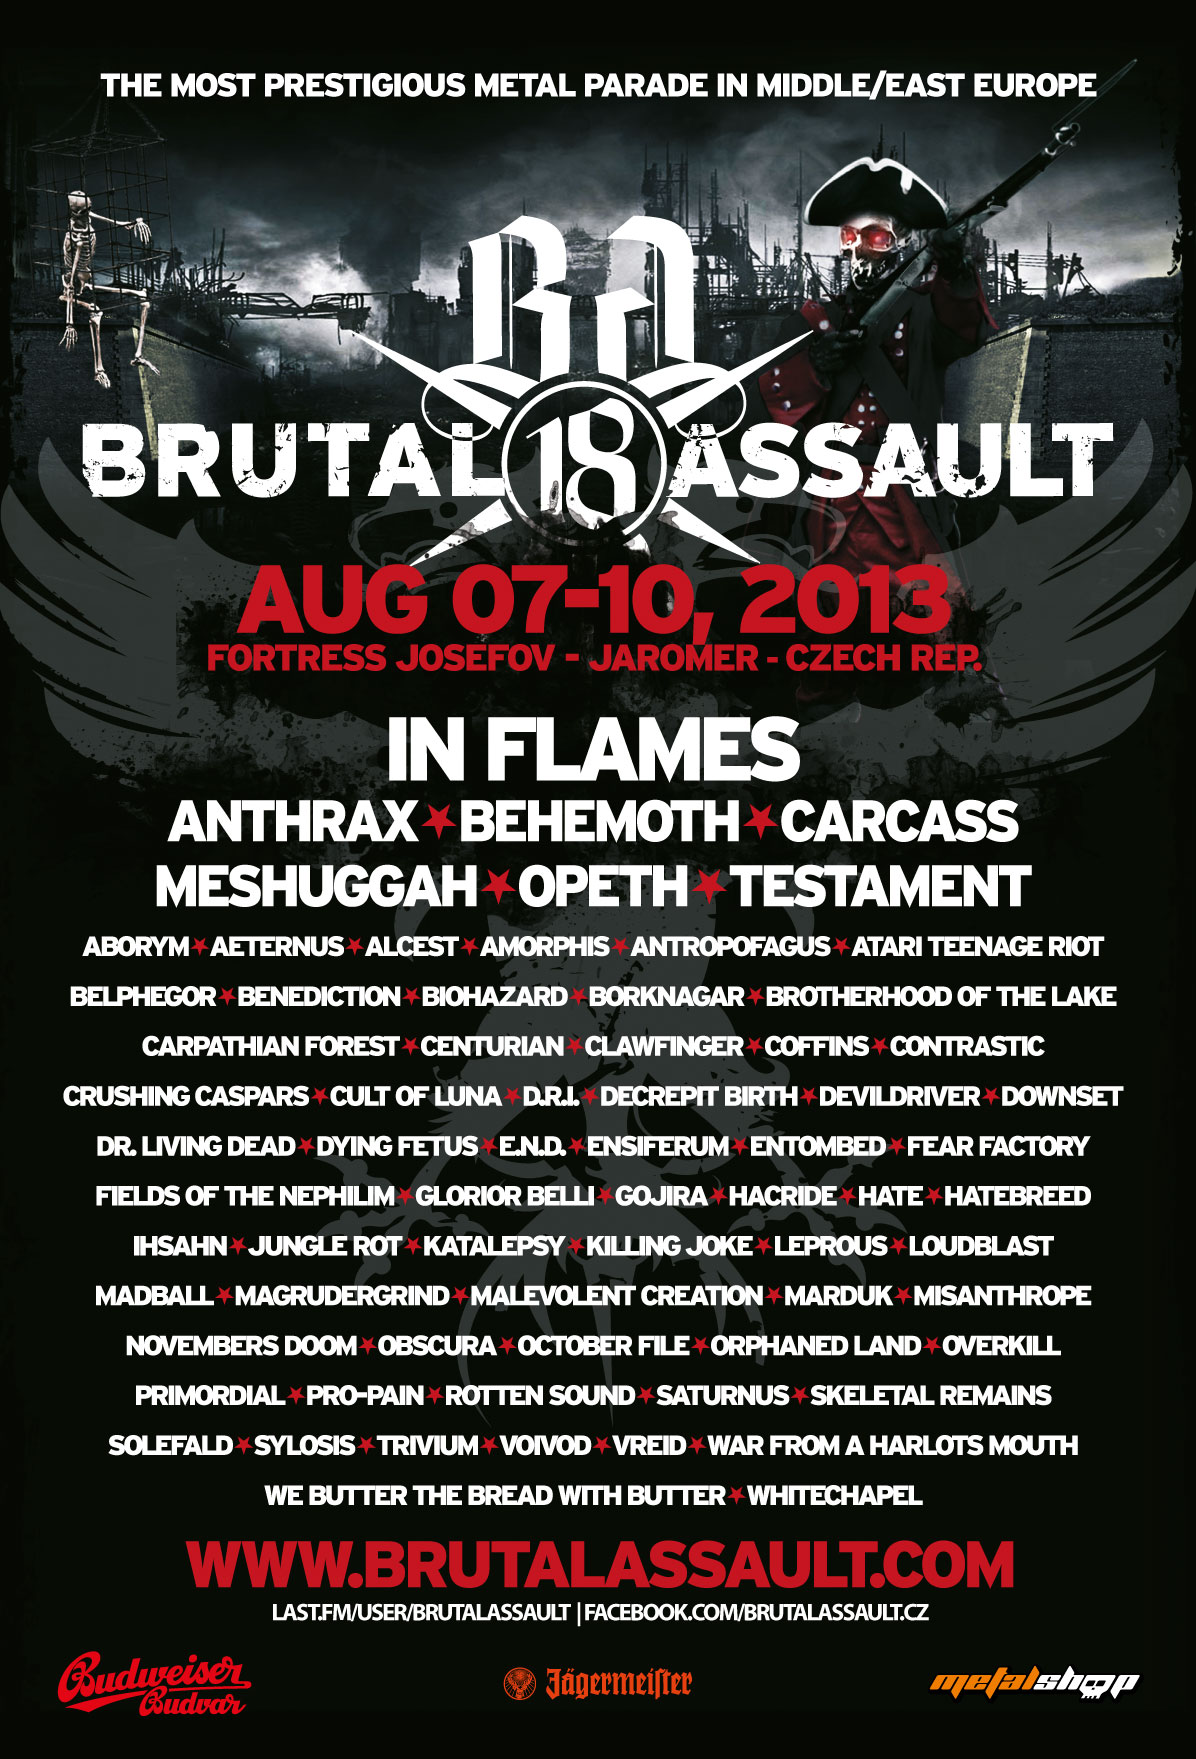 Brutal-Assault-poster2013